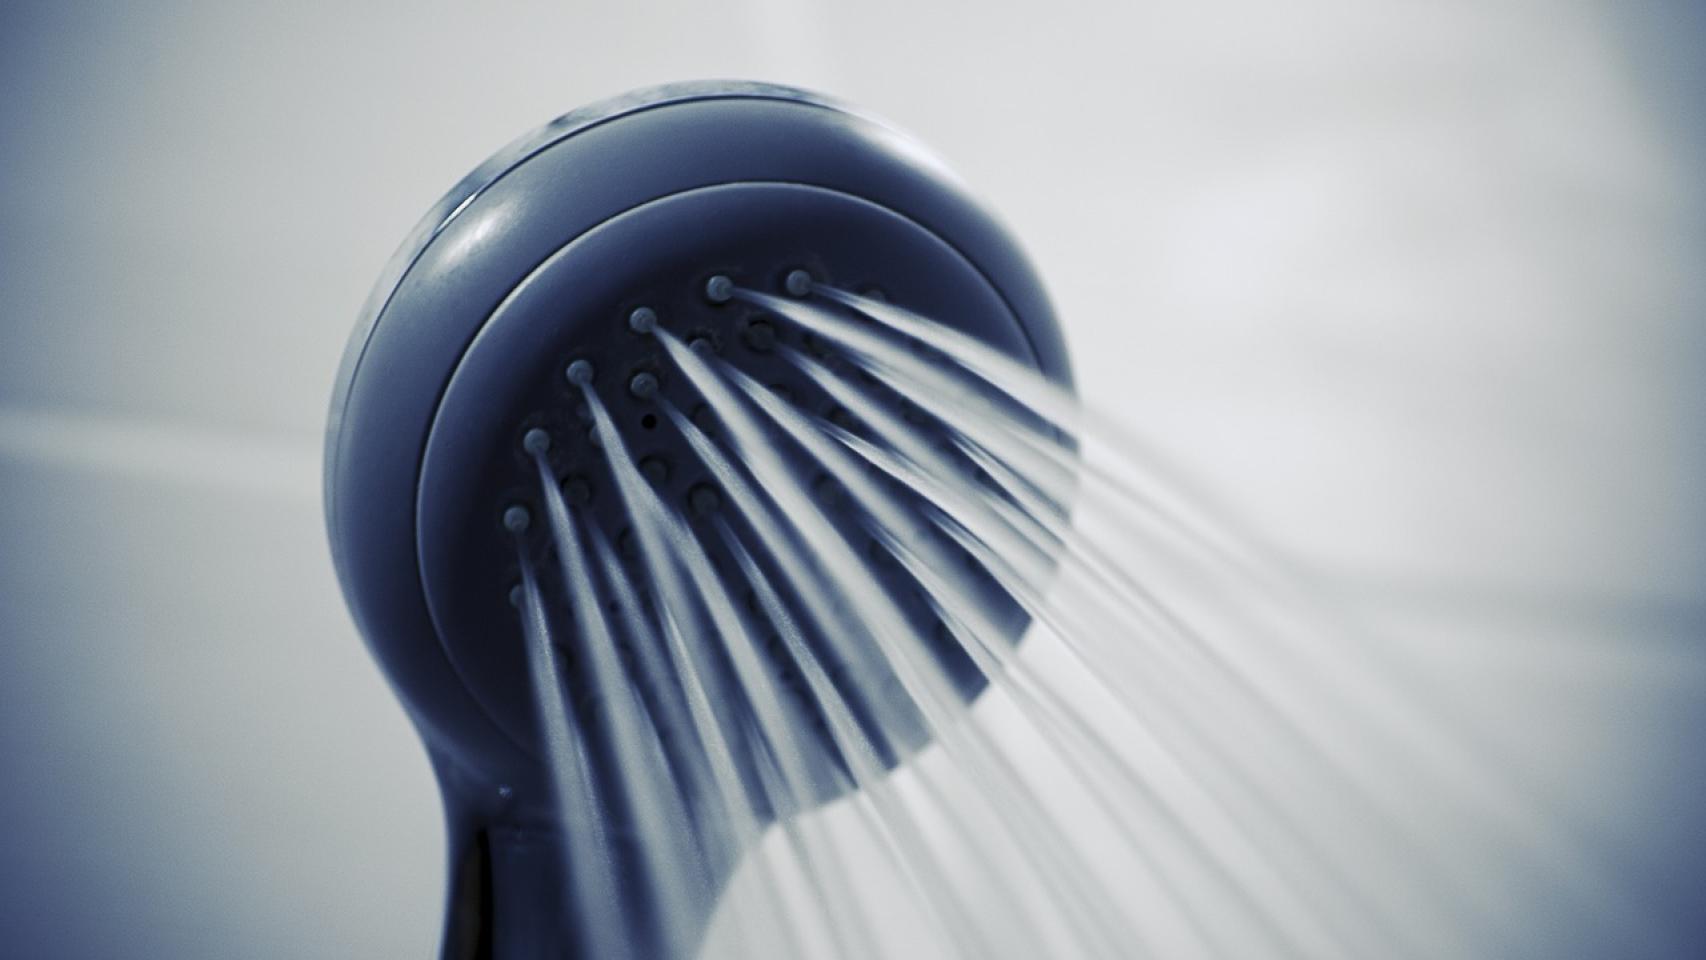 Consejos para desatascar la ducha fácilmente - Saneamientos Mungia